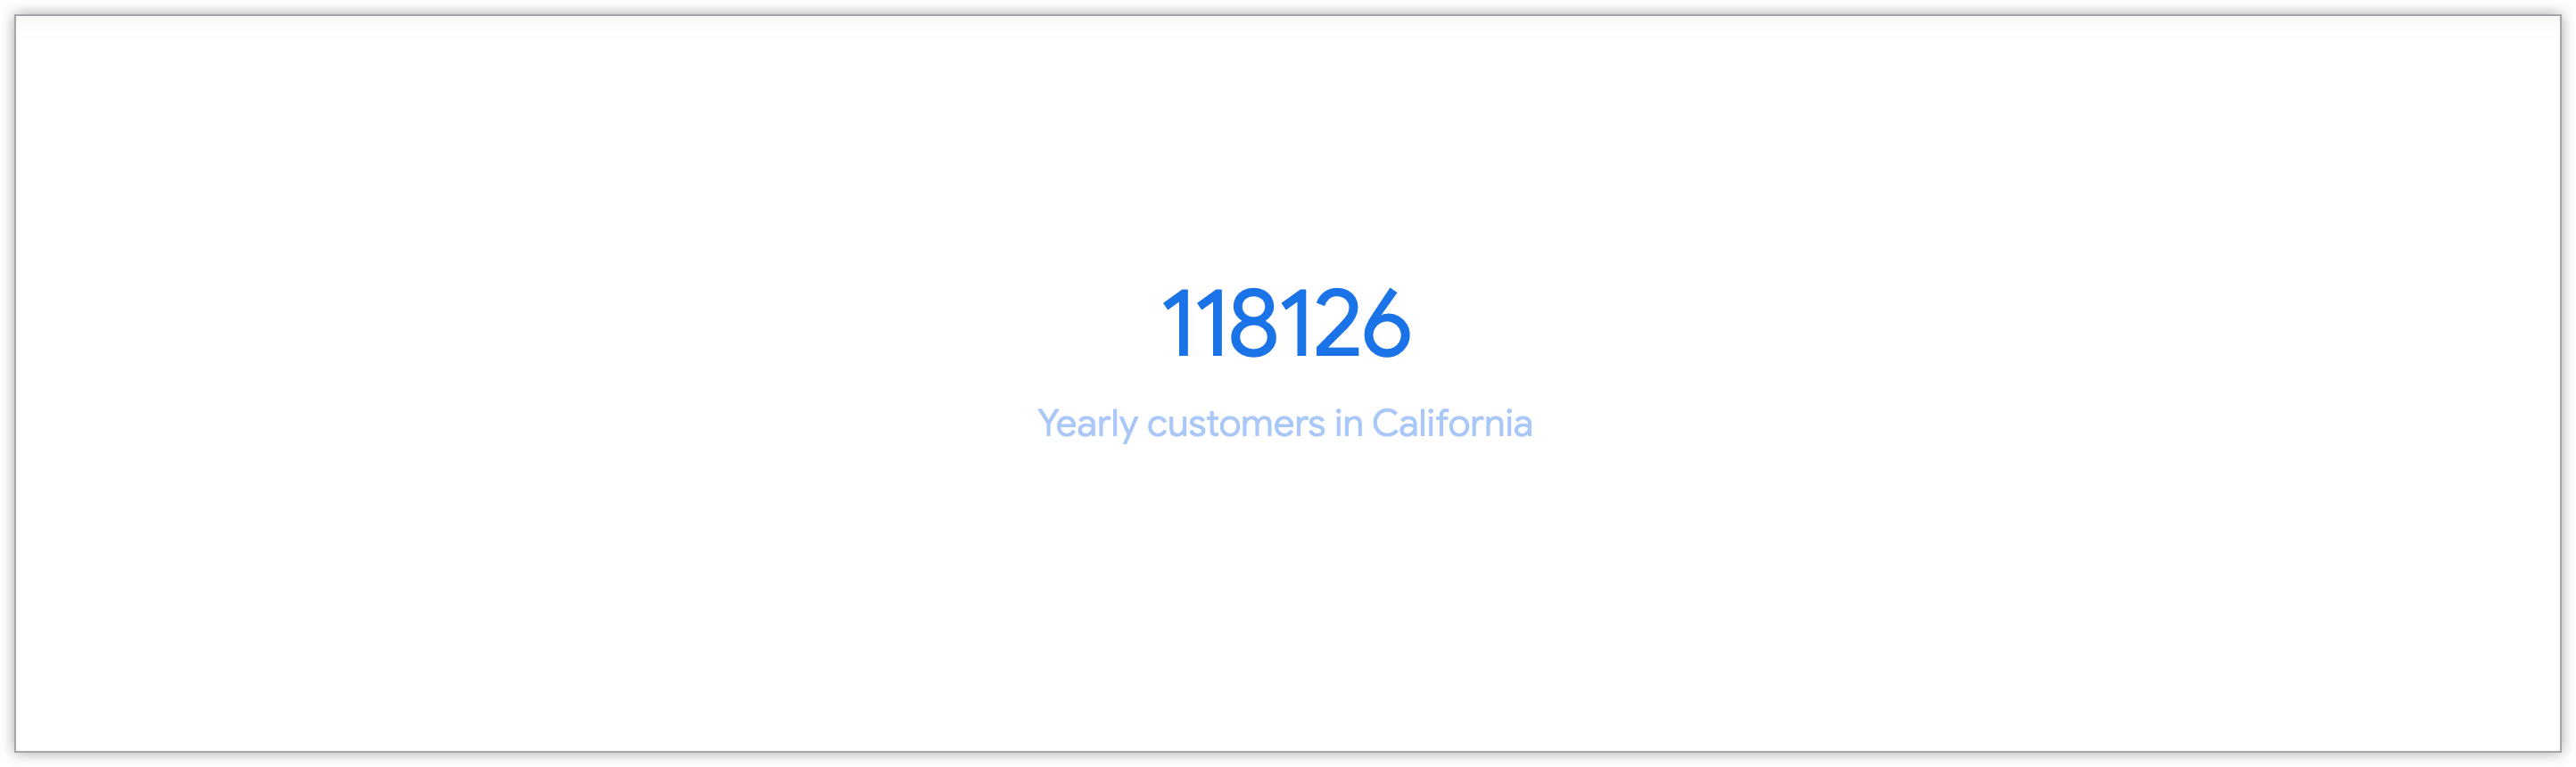 カリフォルニア州の年間顧客数を示す単一値のグラフ。